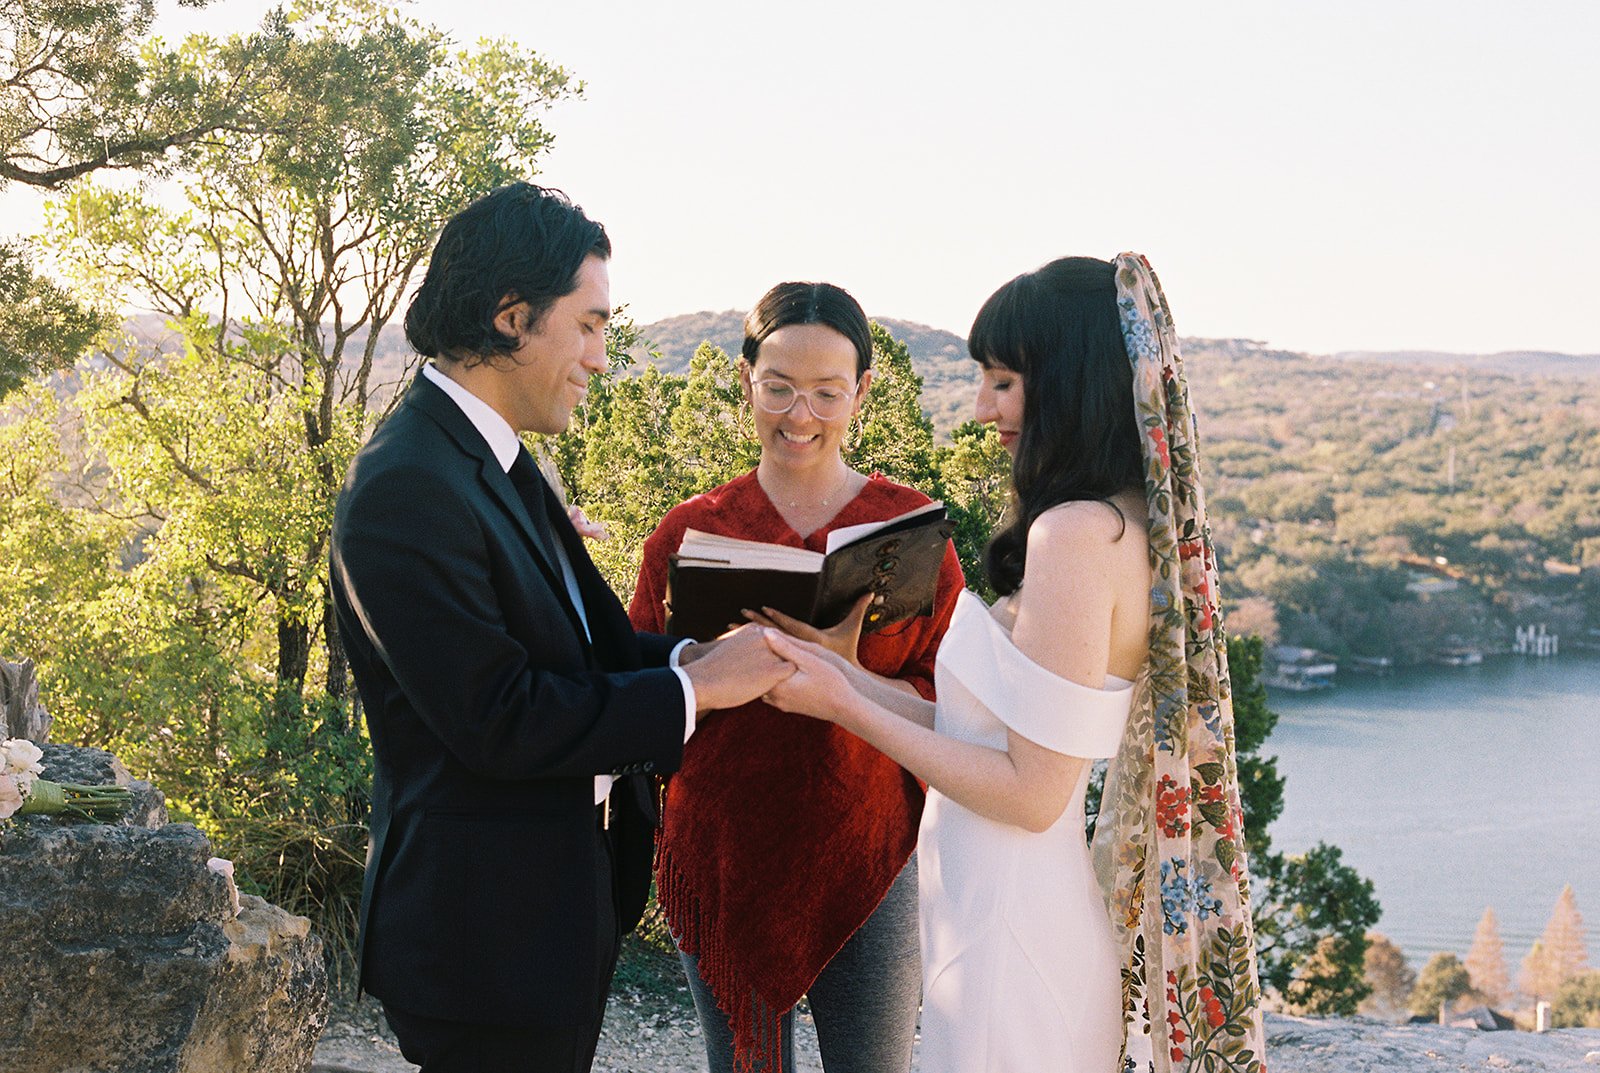 Best-Austin-Wedding-Photographers-Elopement-Film-35mm-Asheville-Santa-Barbara-Laguna-Gloria-14.jpg